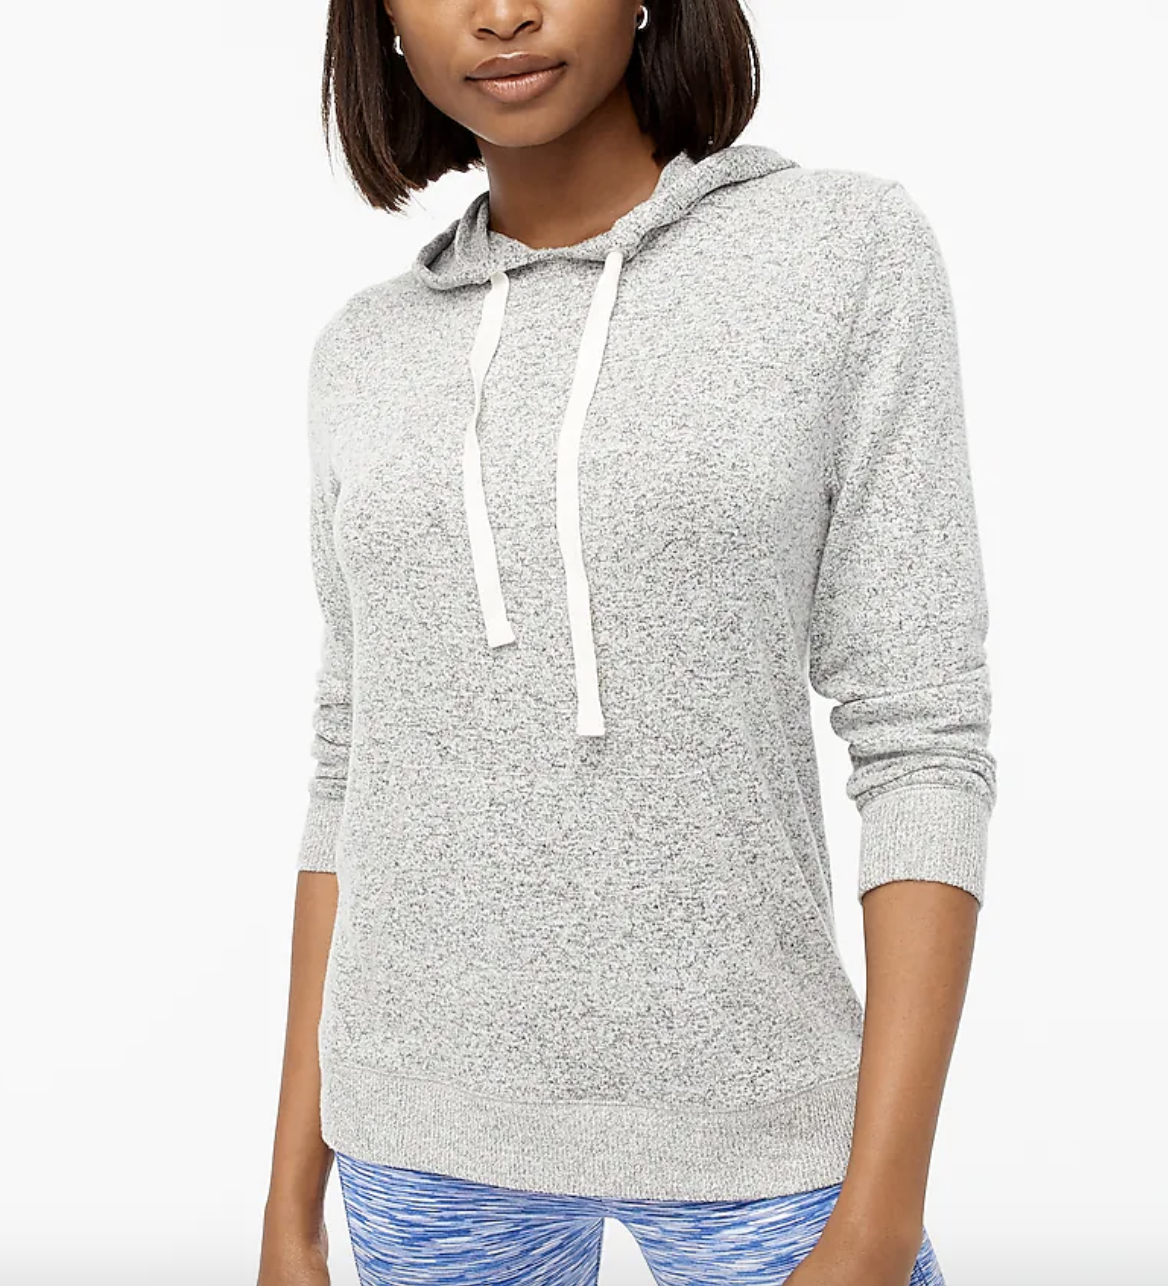 model wearing the gray hoodie